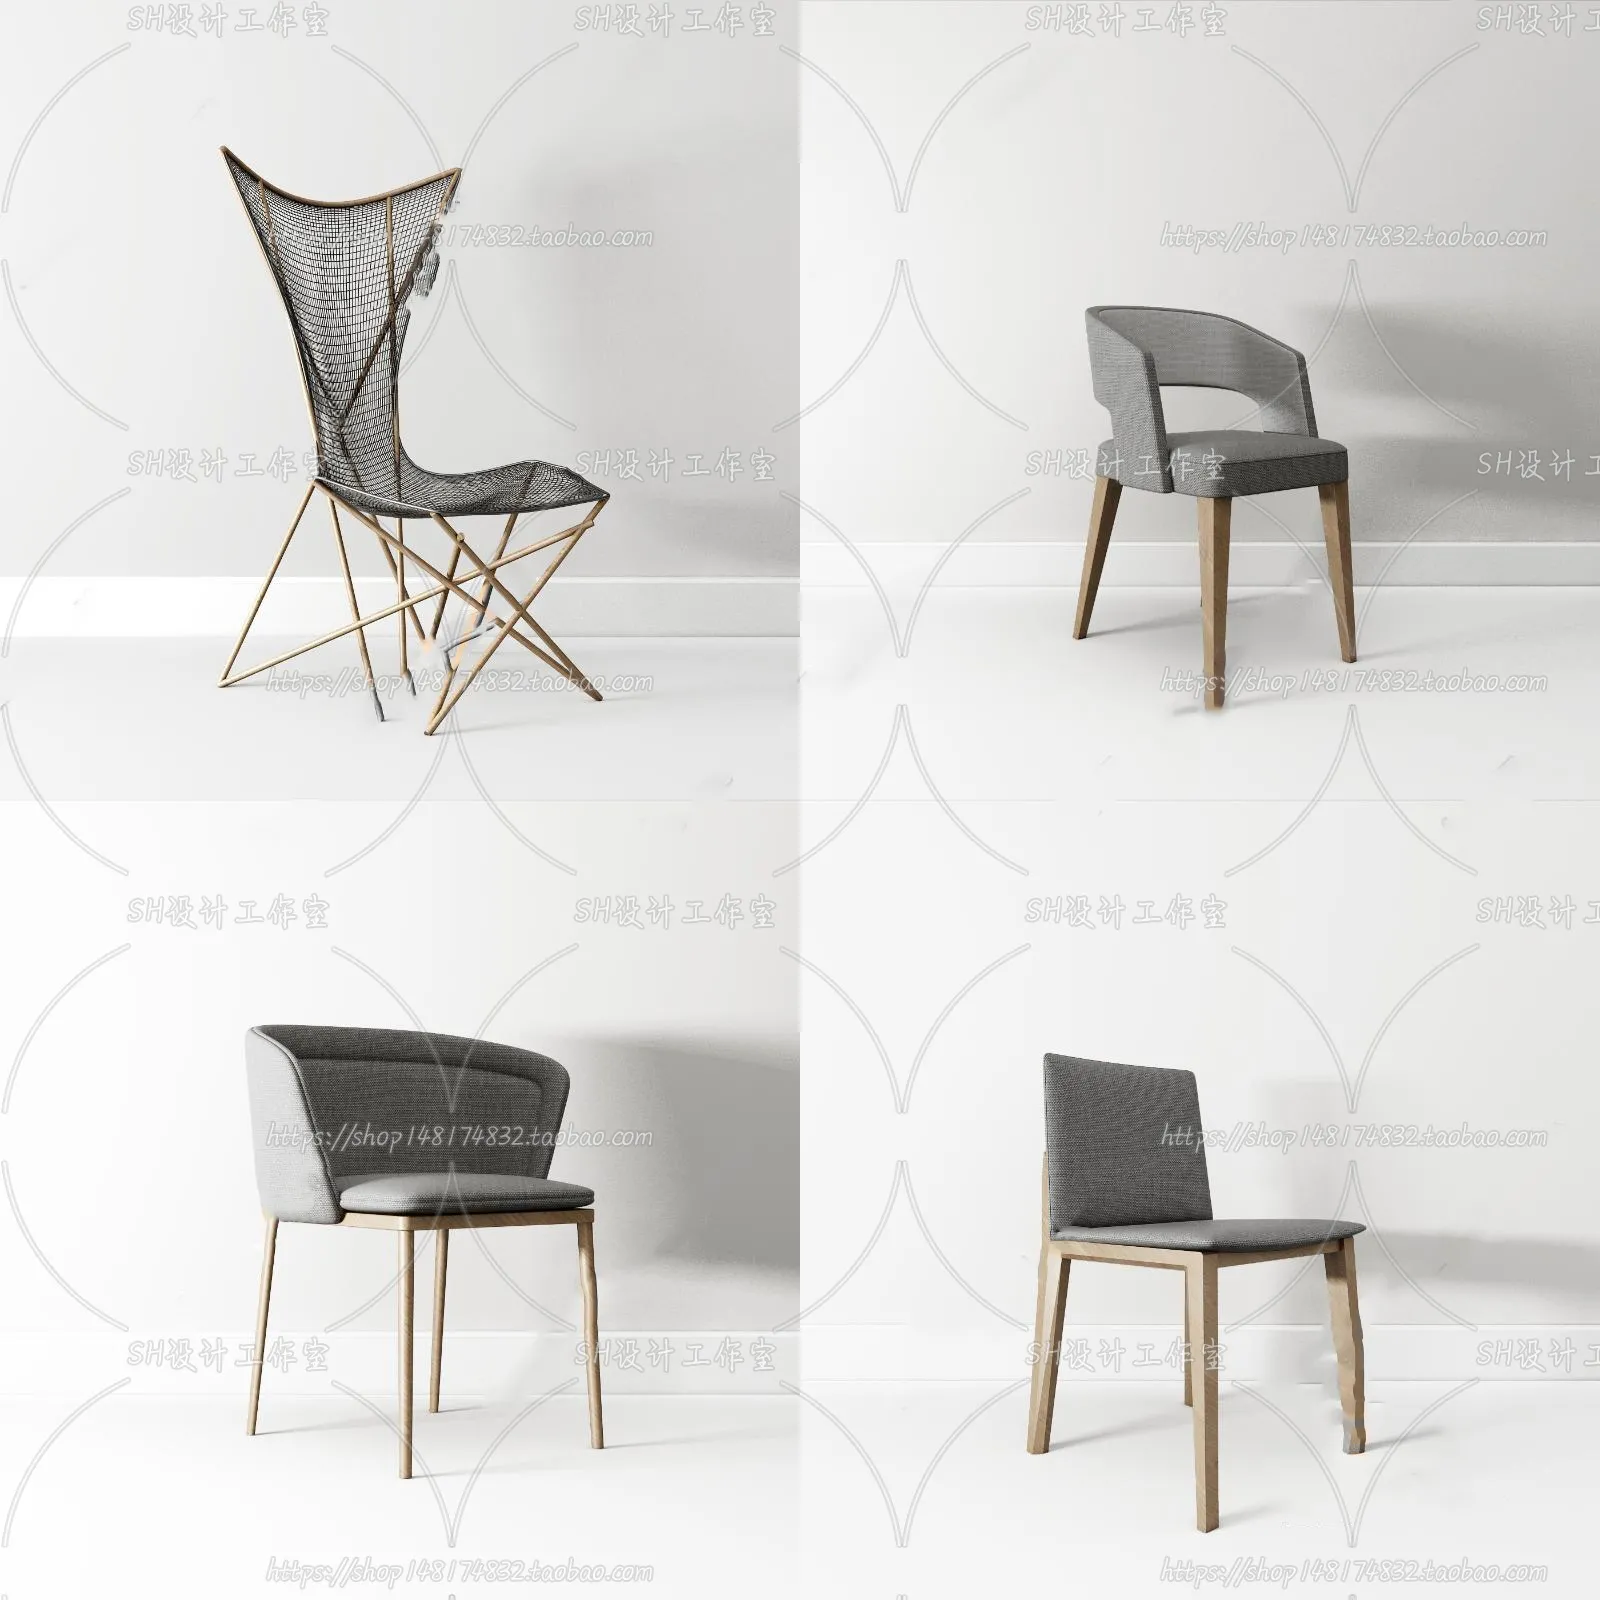 Chair – Single Chair 3D Models – 2008